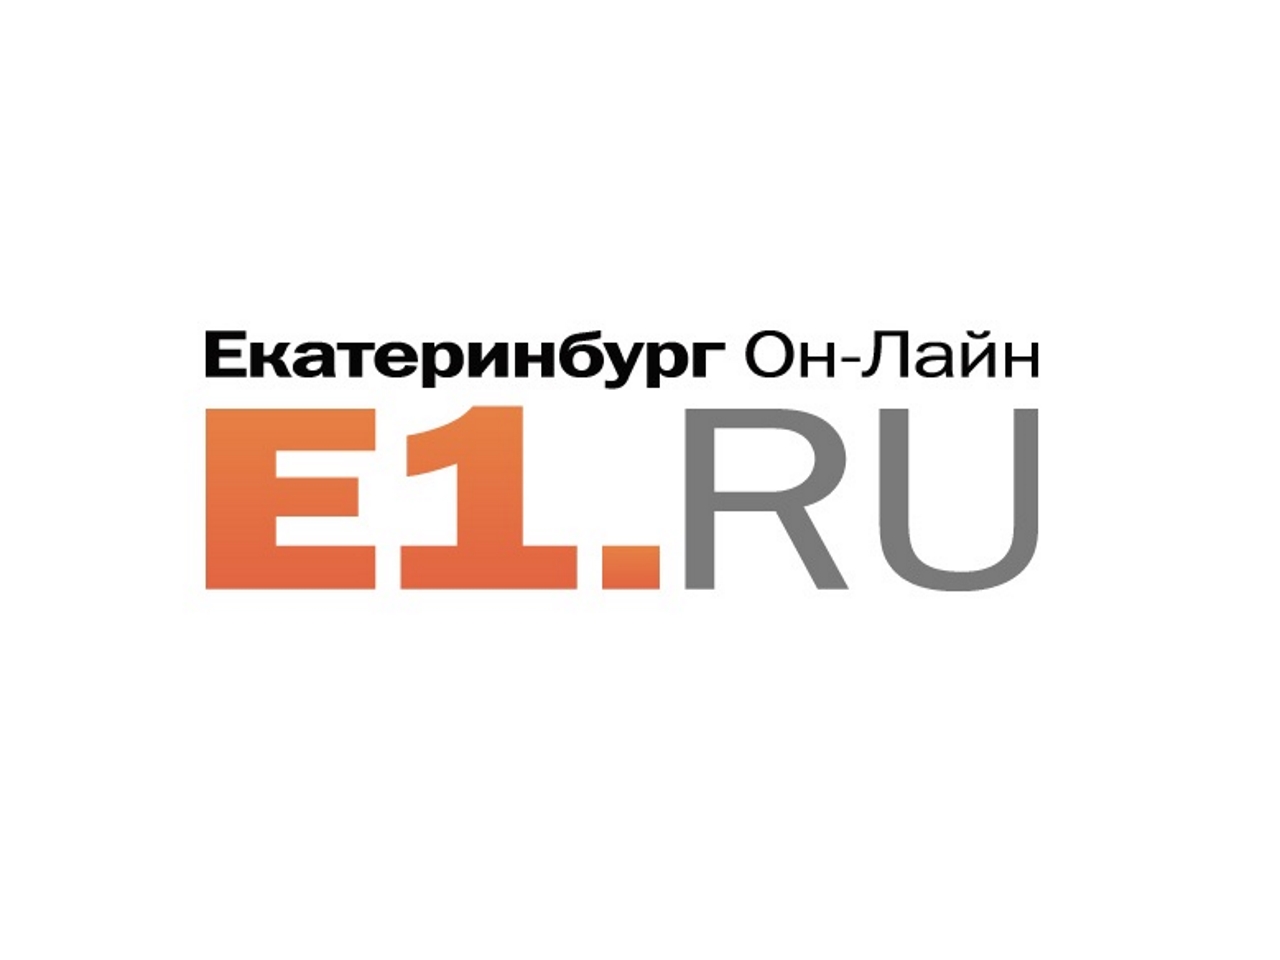 Пятница 1 е. Е1. Е1 лого. Е1 Екатеринбург. Е1. Ру эмблема.